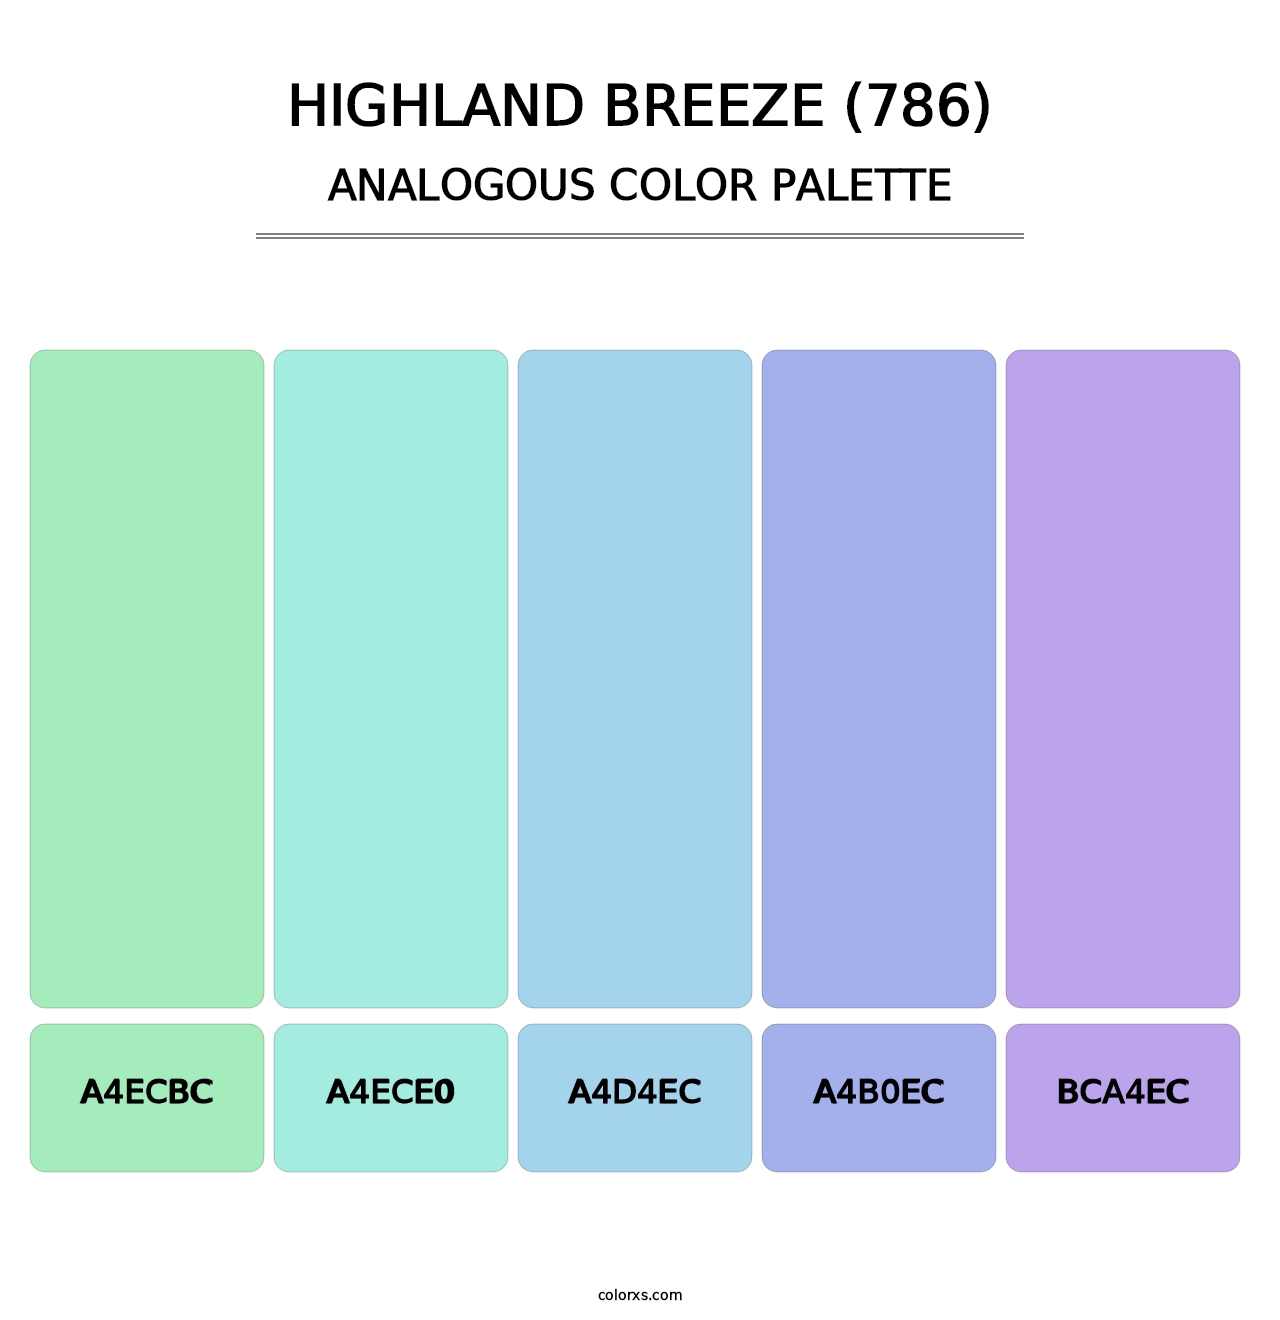 Highland Breeze (786) - Analogous Color Palette